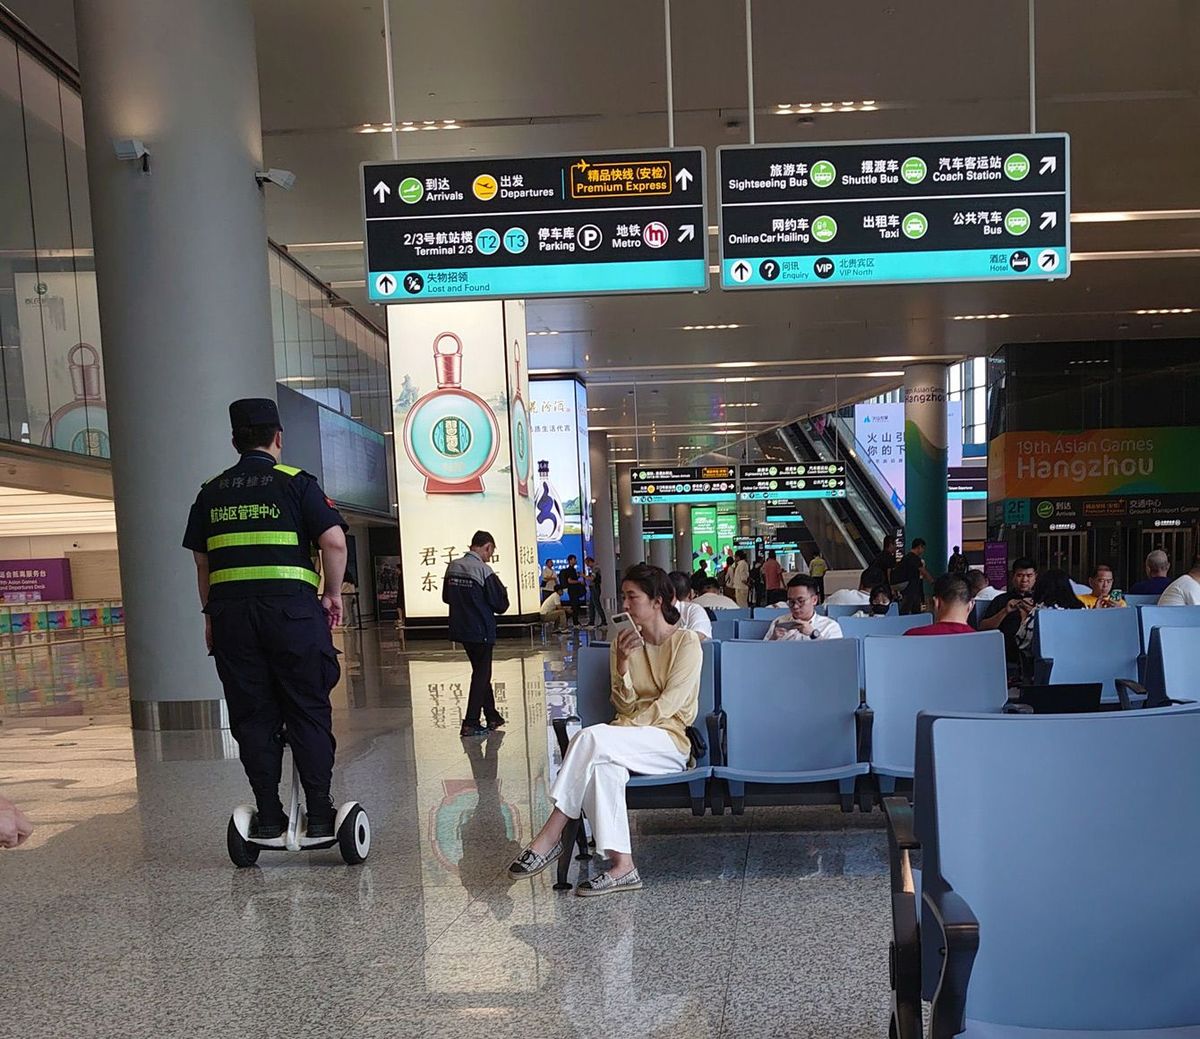 中国の空港ではスタッフや警備員もパーソナルトランスポーターを使用している